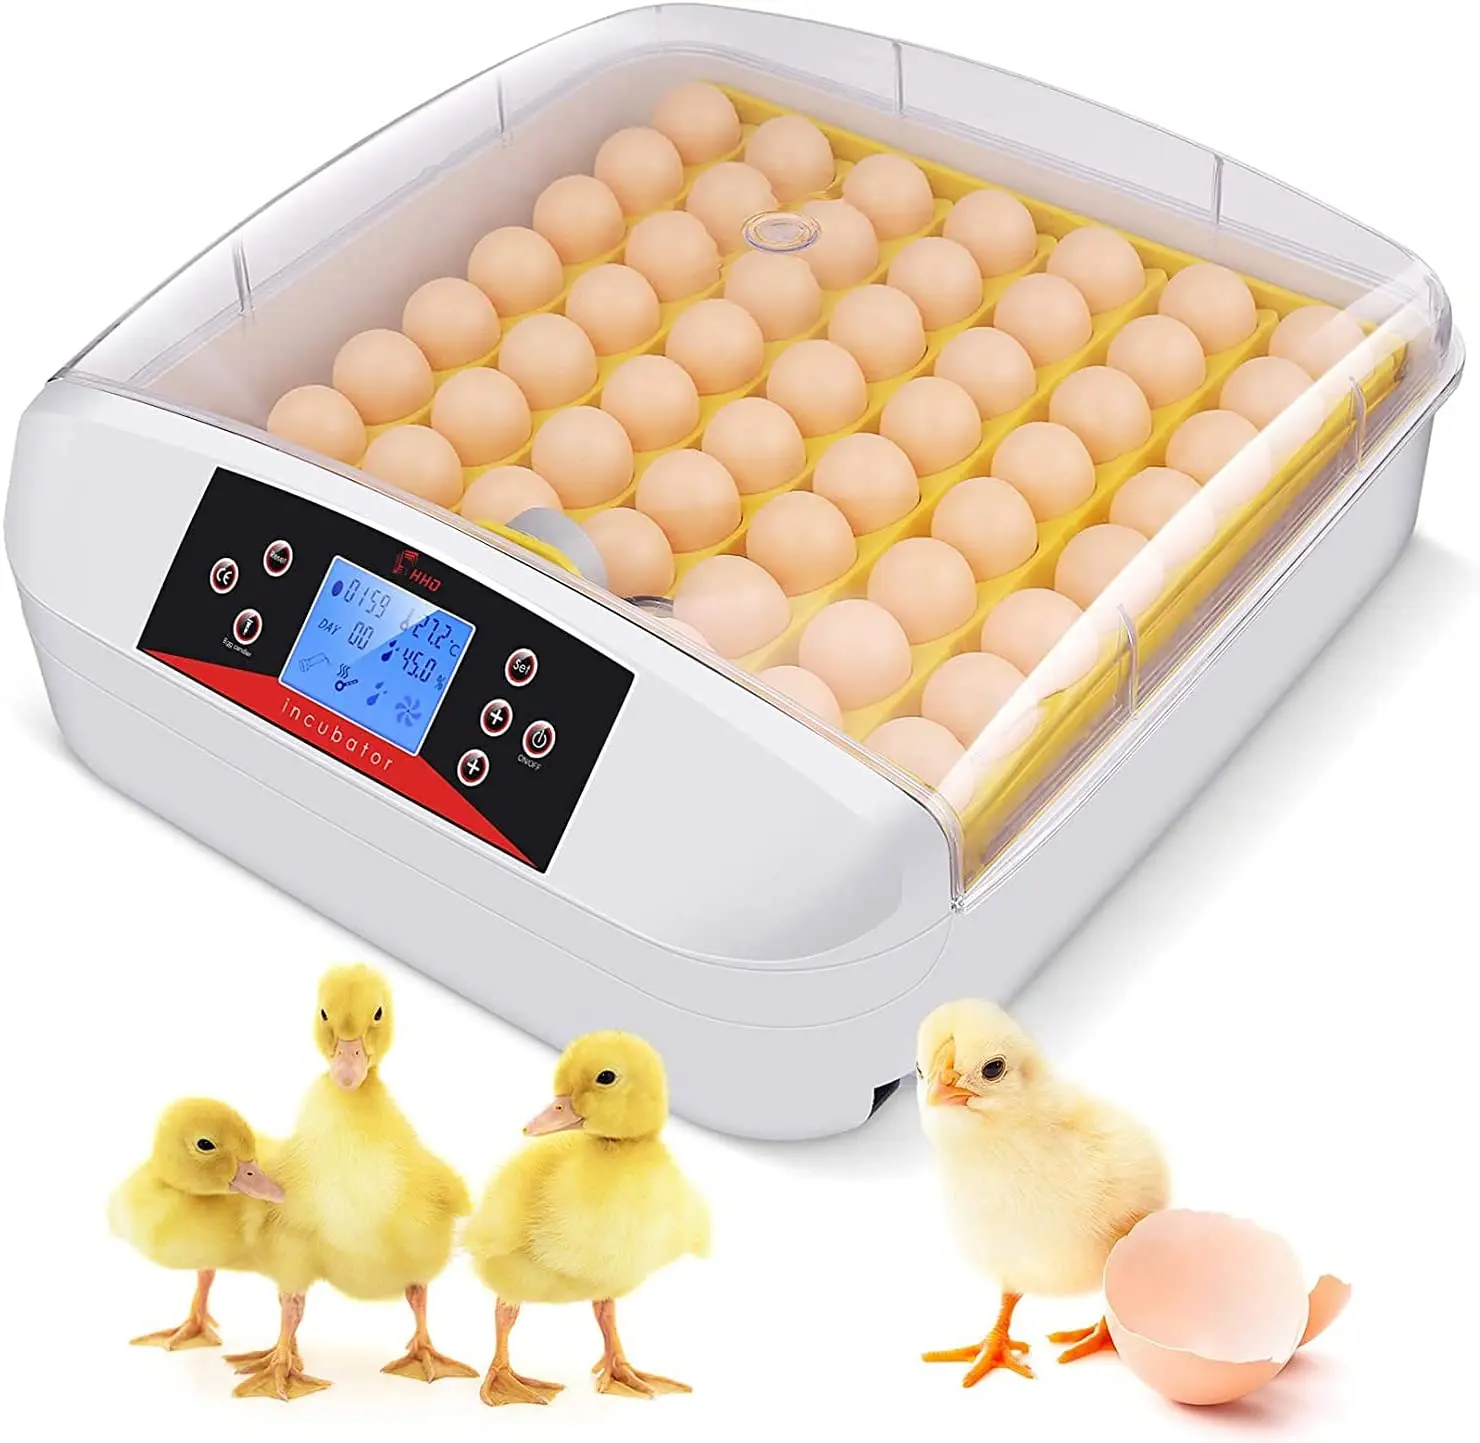 Incubadora de pollos automática, 56 huevos de loro fértiles, oferta, 2020